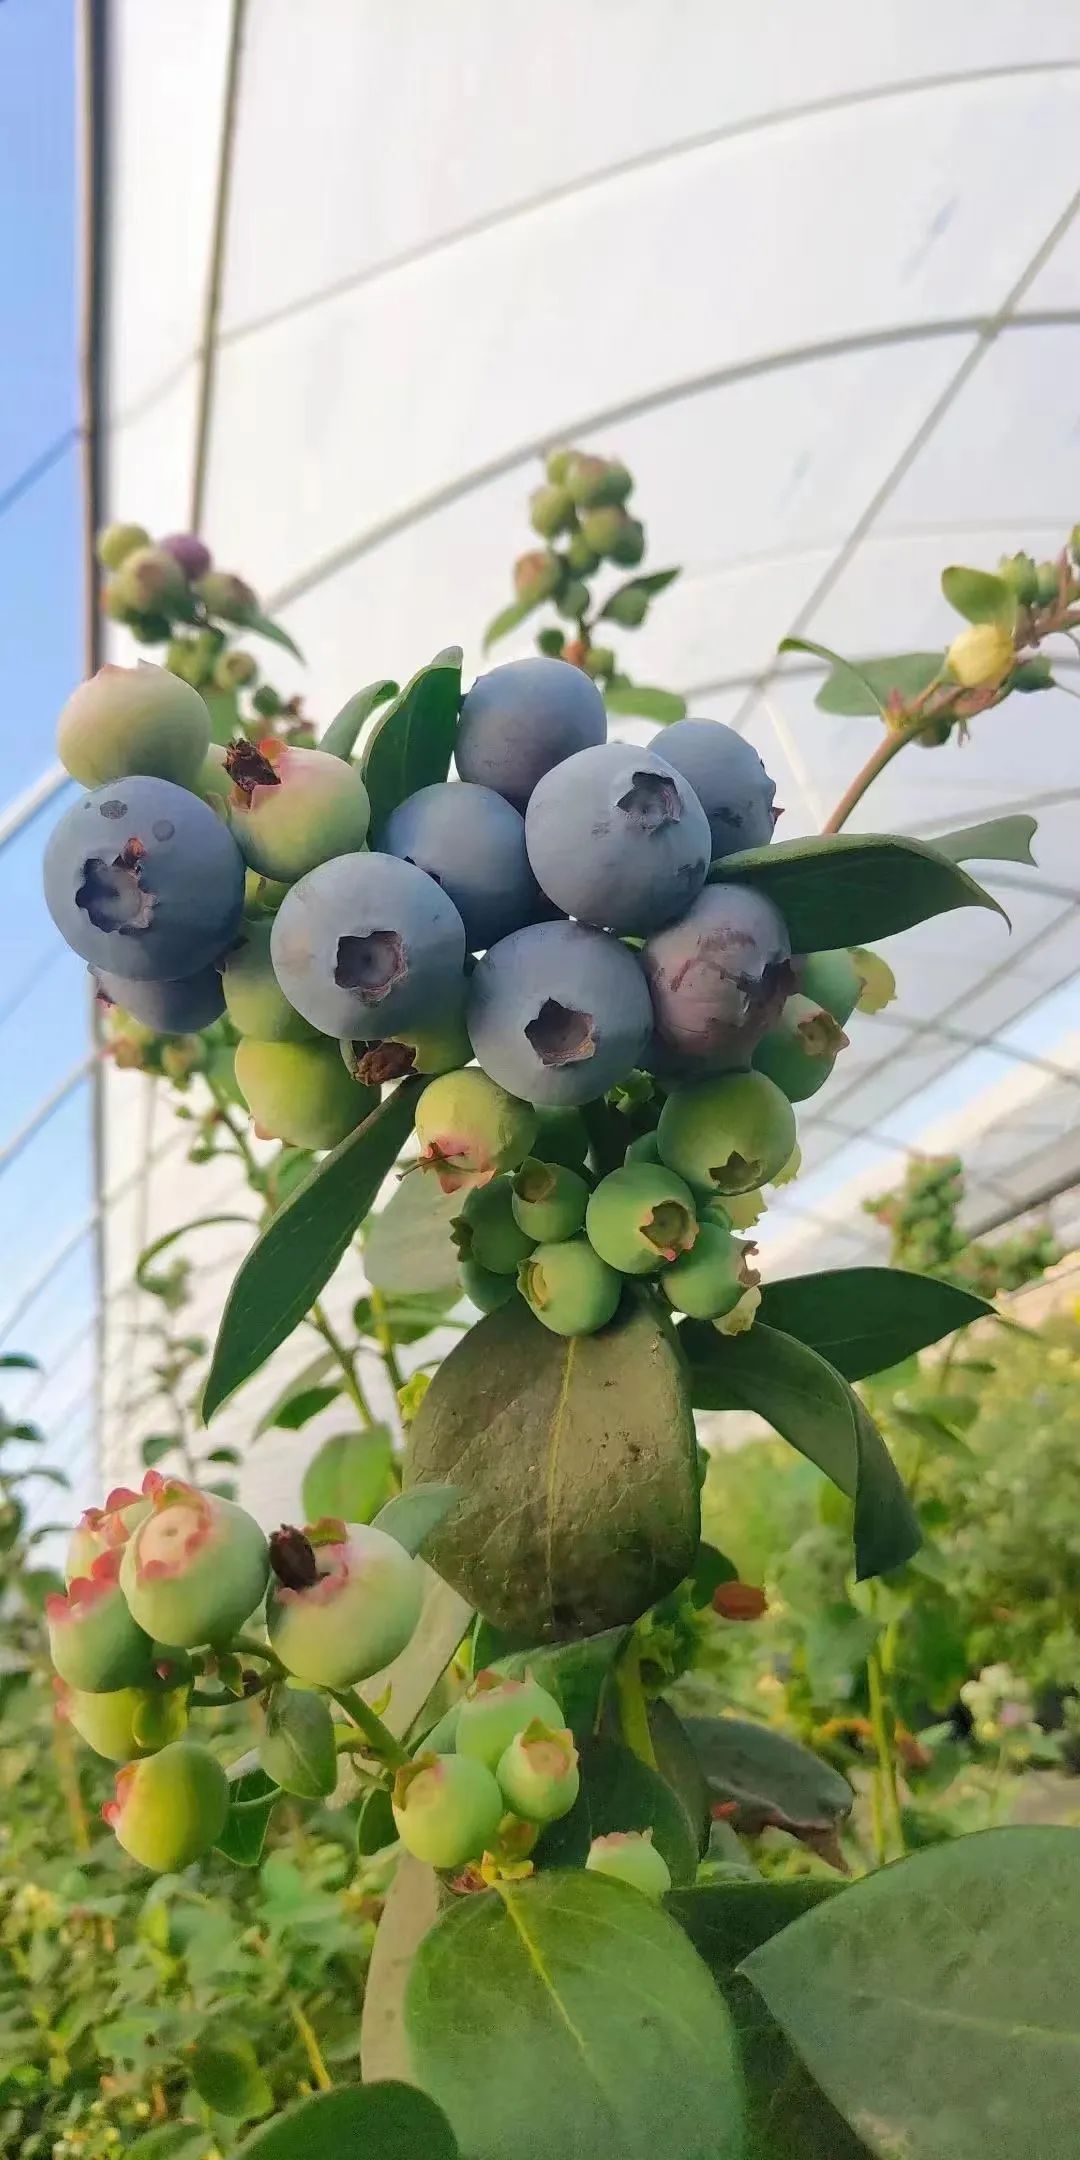 在蓝莓大棚里，每颗树苗都能“吃”够阳光 / 受访者供图